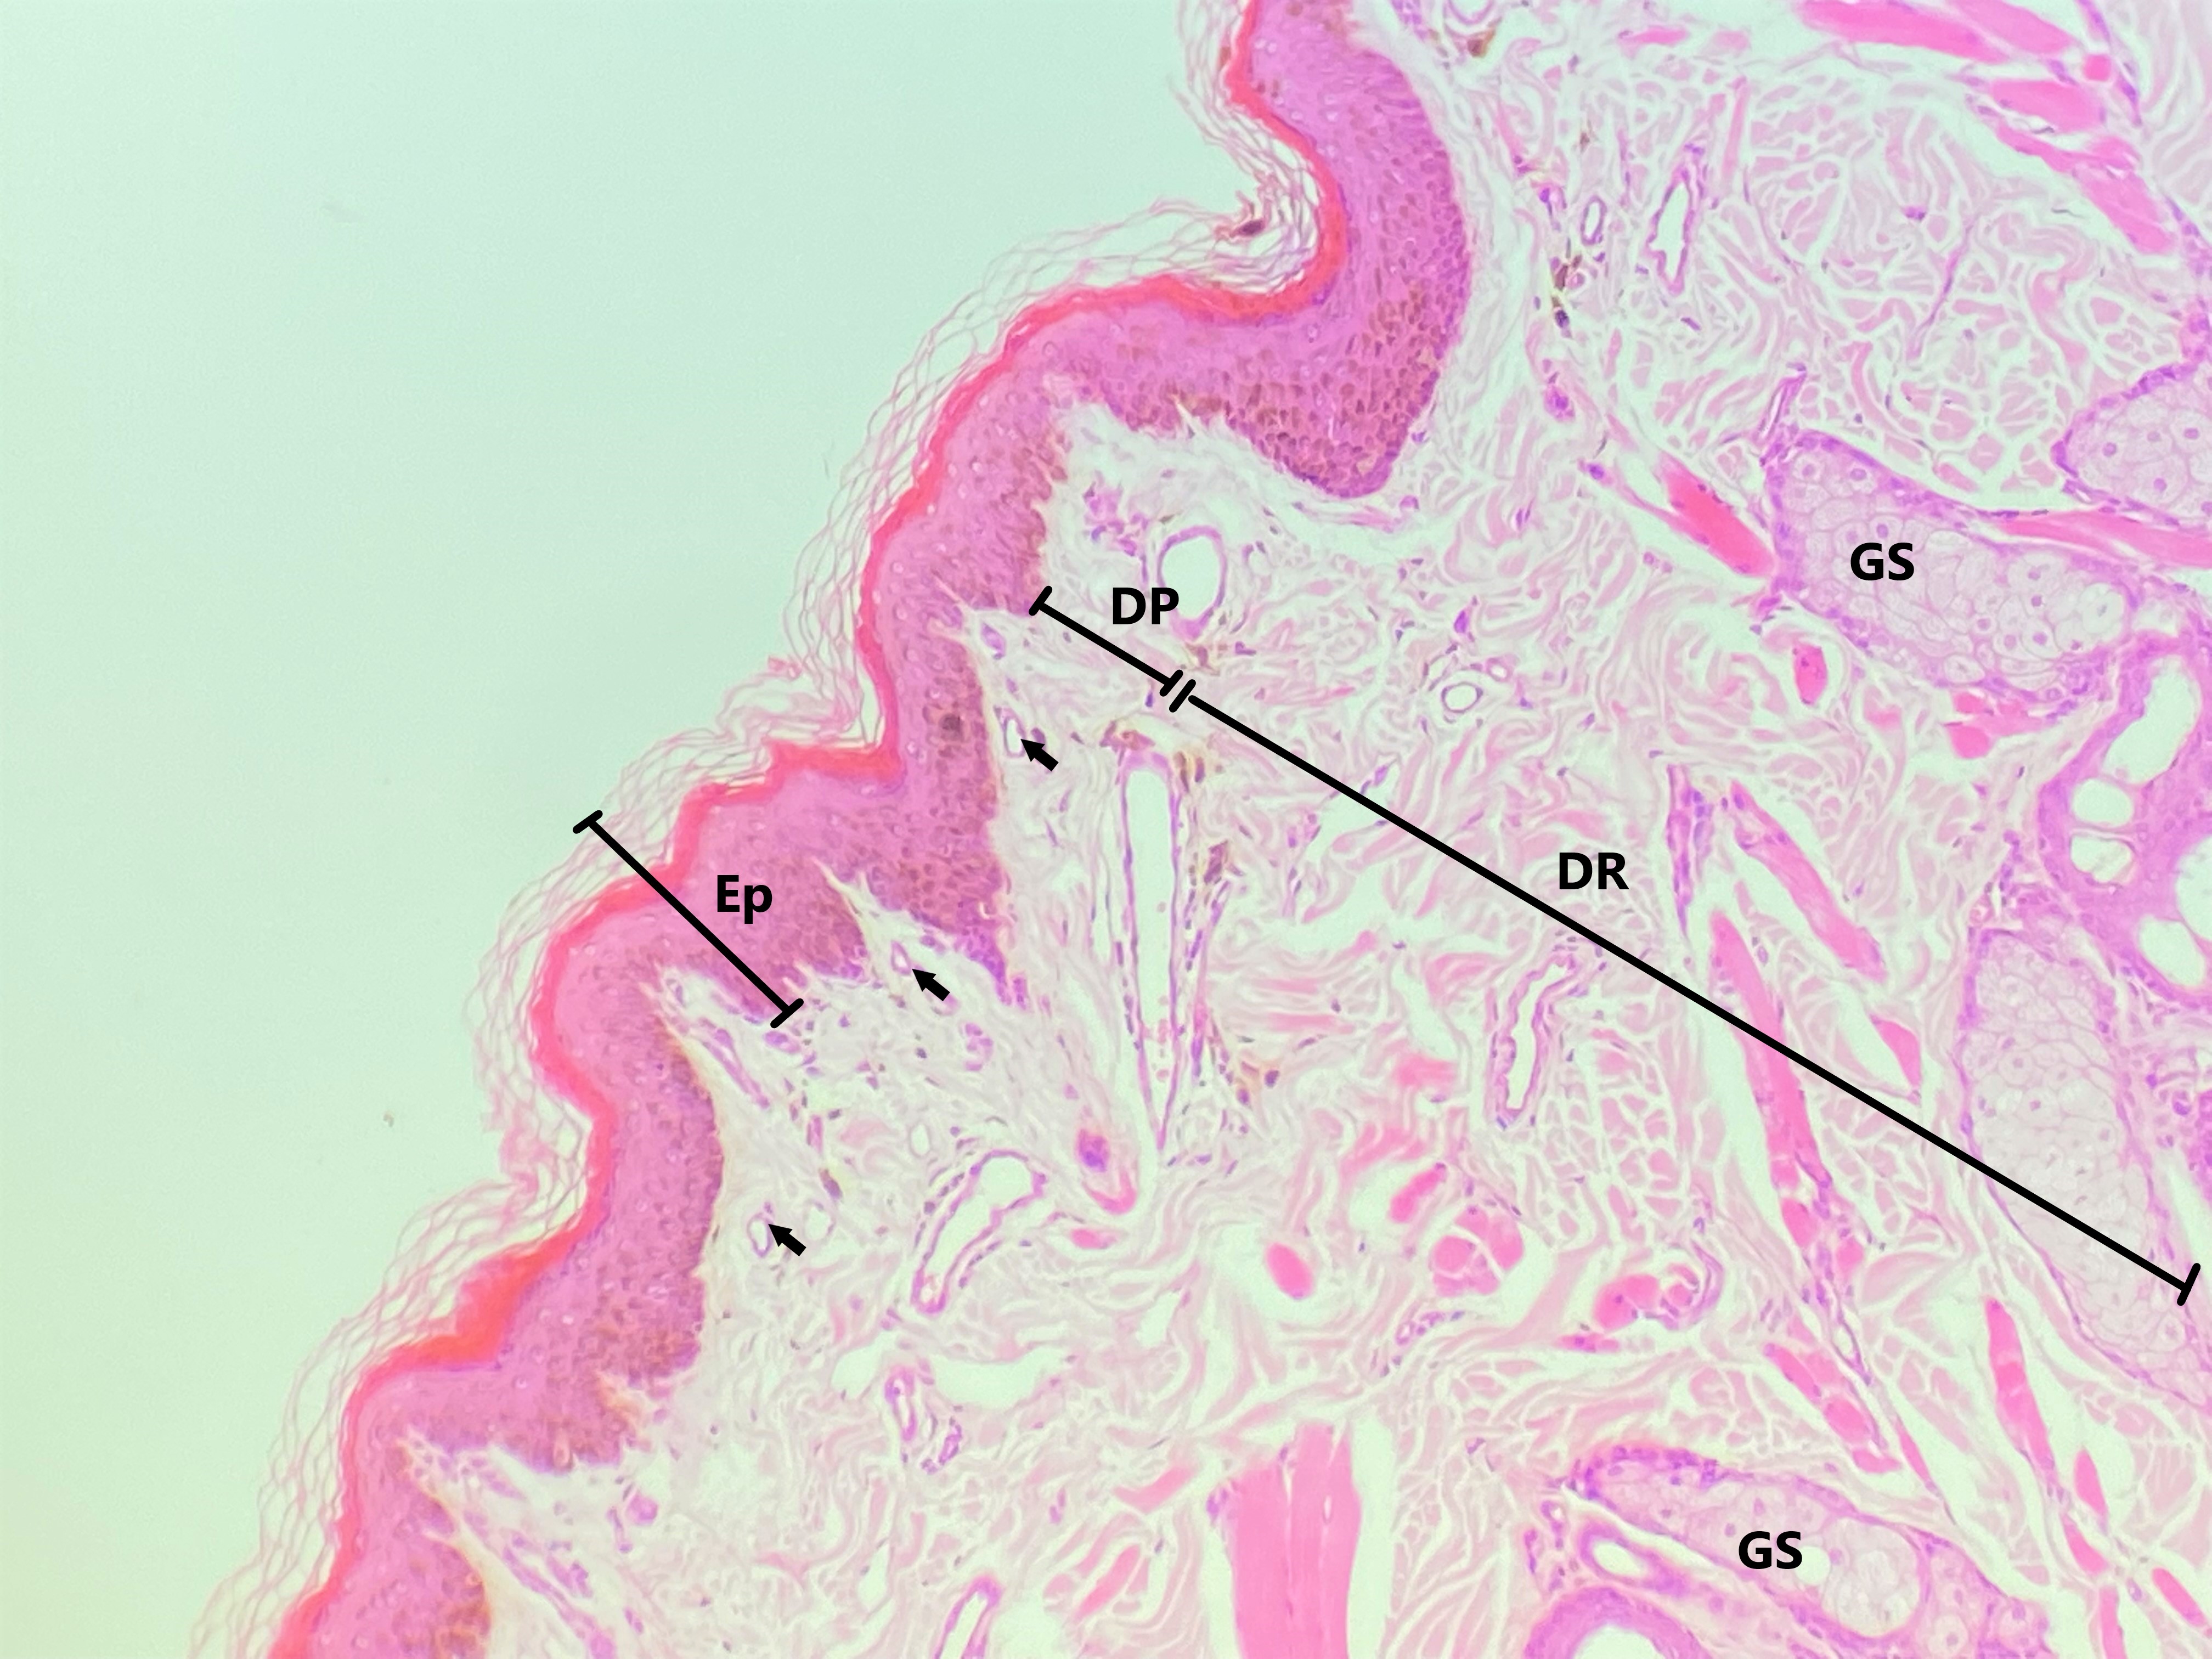 Lâmina: Pele fina (H&E - Aumento: 200x).  Epitélio estratificado pavimentoso queratinizado da pele delgada (Pequeno aumento). É possível observar as camadas da pele, a epiderme (Ep) e a derme (De). A derme pode ser subdividida em derme papilar (DP), constituída por tecido conjuntivo frouxo apresentando vários capilares sanguíneos (CS), e em derme reticular (DR), formada por tecido conjuntivo denso não modelado.